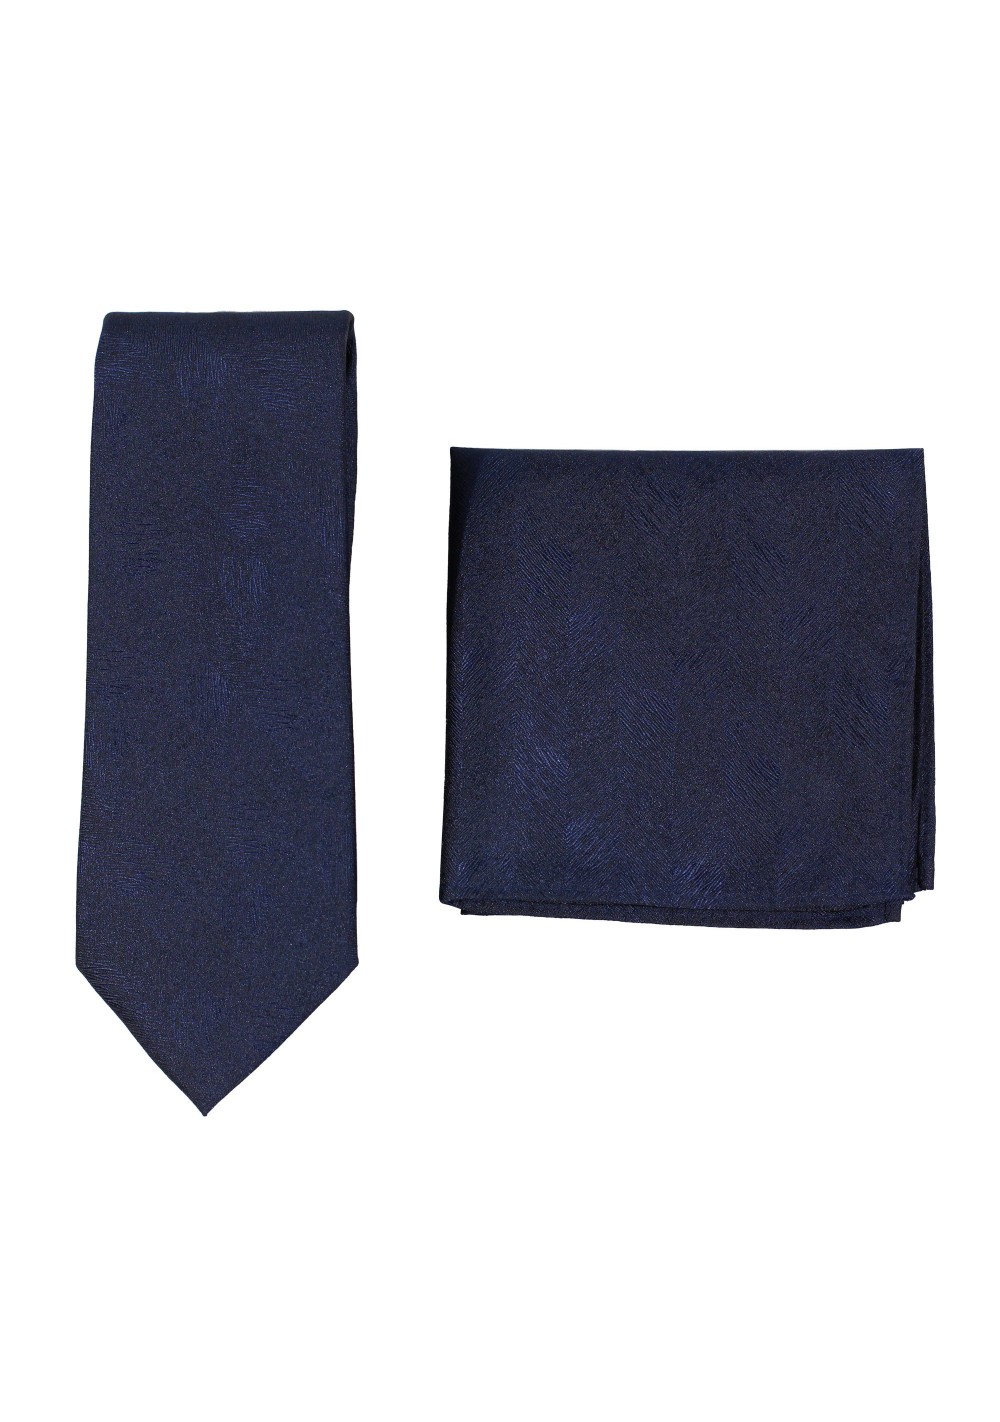 Woodgrain Texture Necktie Set in Dark Navy